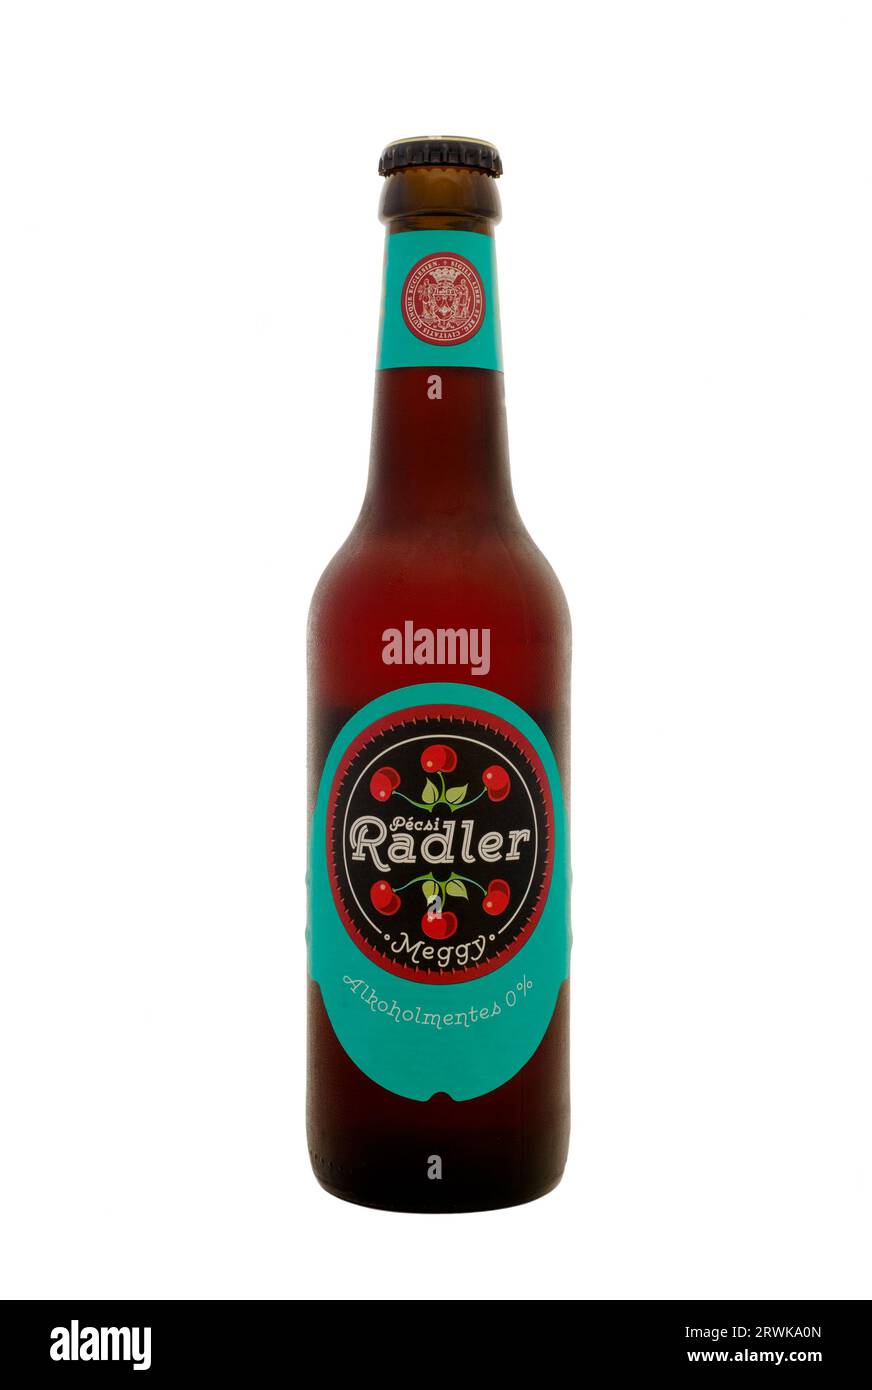 bouteille hongroise pecsi meggy radler saveur cerise bière lager sans alcool sur fond blanc Banque D'Images